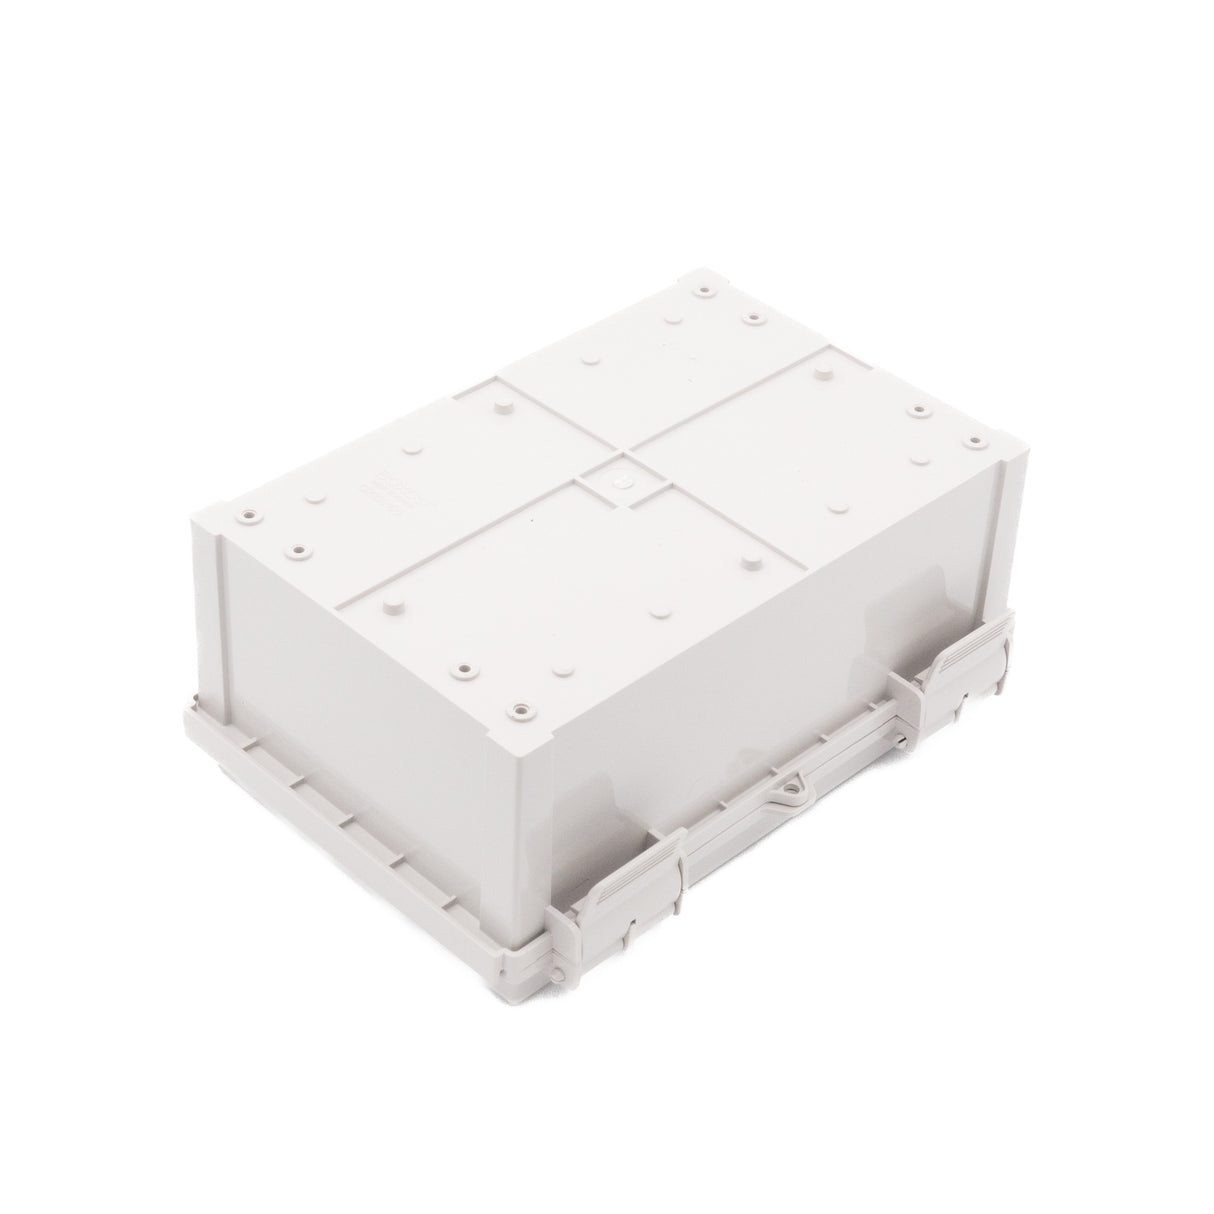 Boxco Q-Series 200×300×130mm Plastic Enclosure, IP67, IK08, PC, Grey Cover, Plastic Hinge and Latch Type